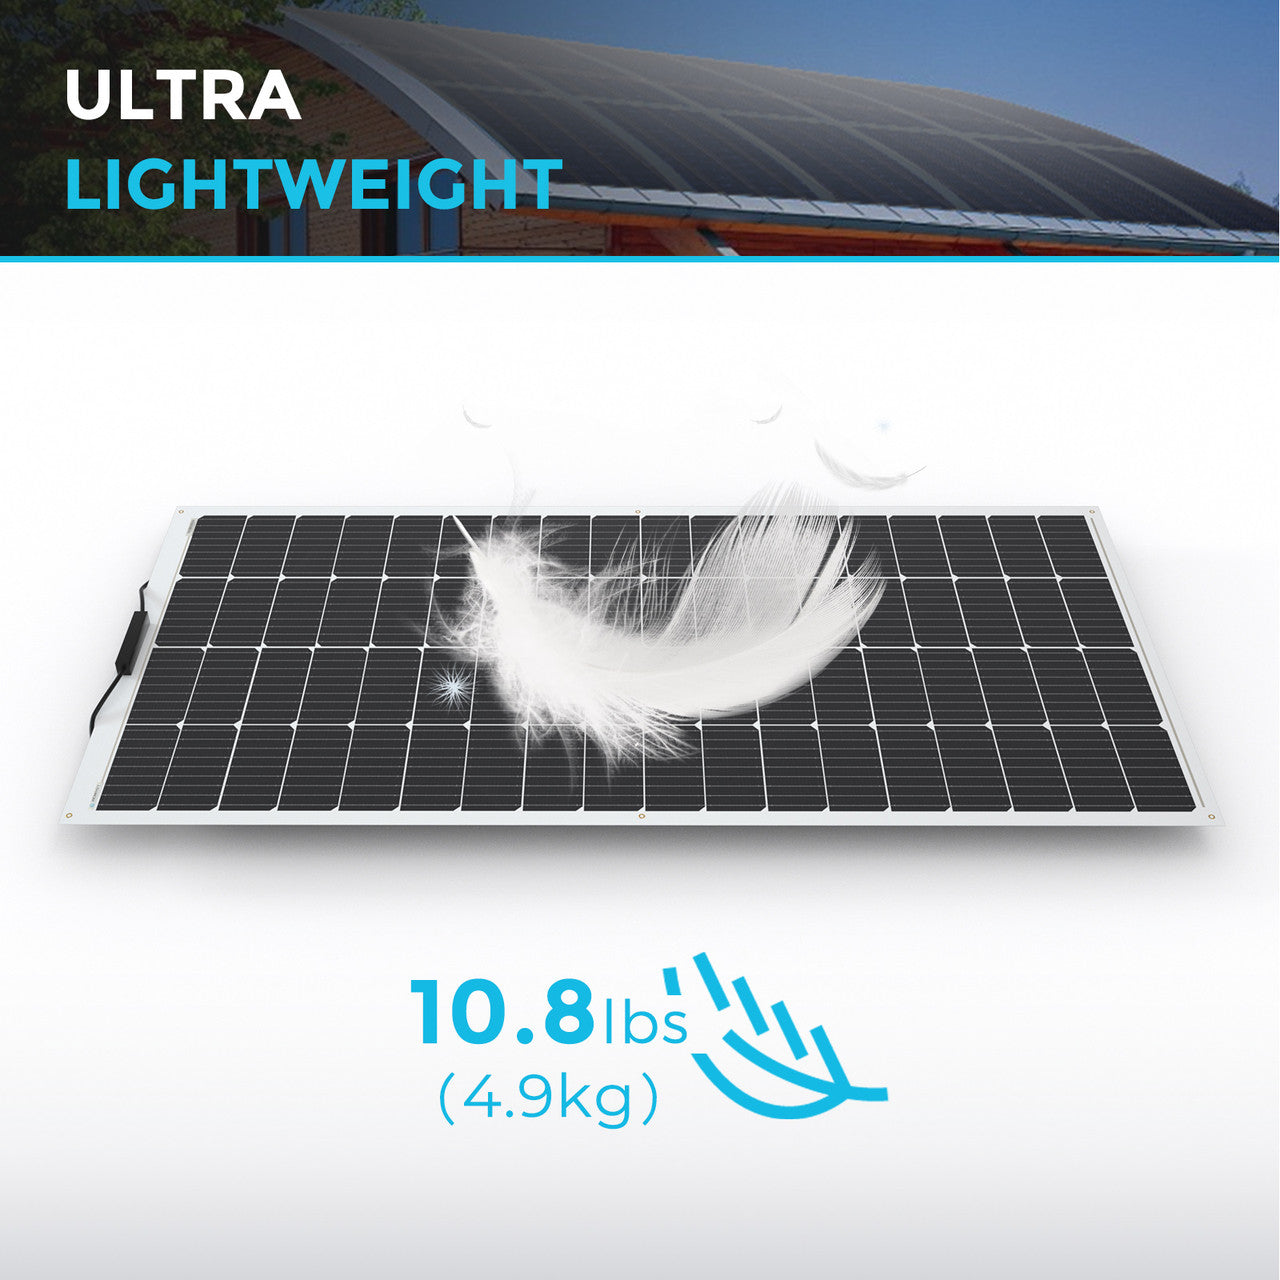 Renogy 200 Watt 12 Volt Flexible Monocrystalline Solar Panel